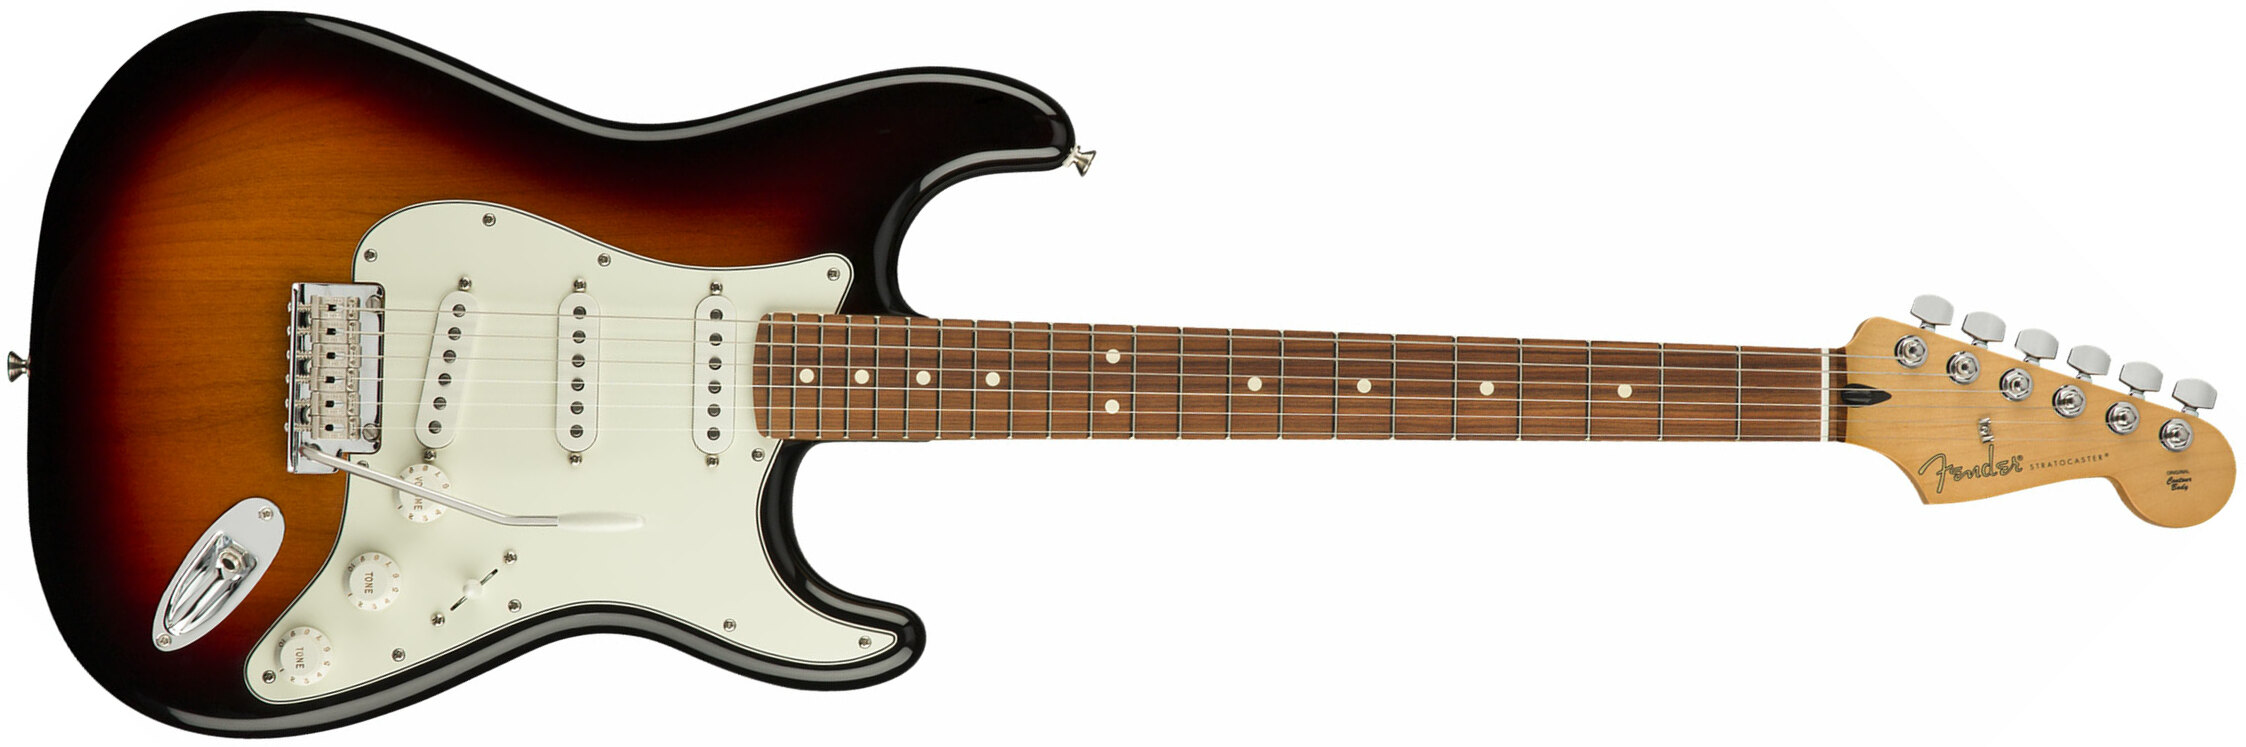 Fender Strat Player Mex Sss Pf - 3-color Sunburst - Guitarra eléctrica con forma de str. - Main picture